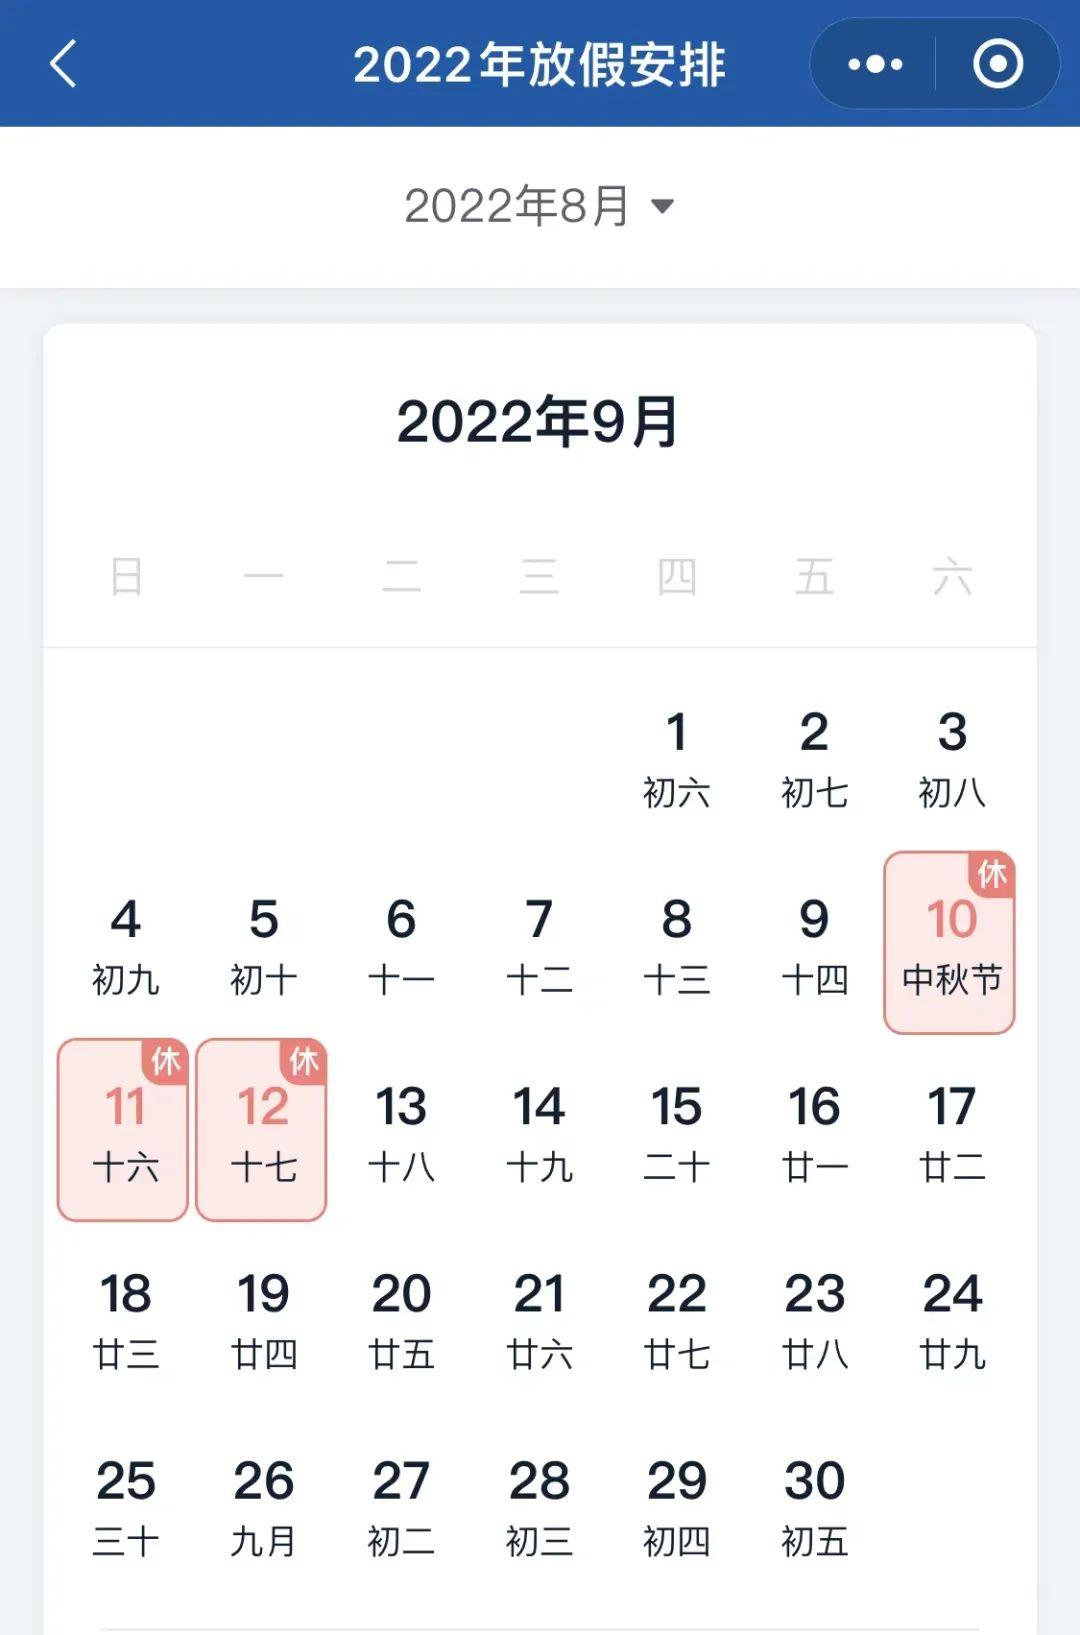 2022年中秋节放假通知来了！共3天,不调休